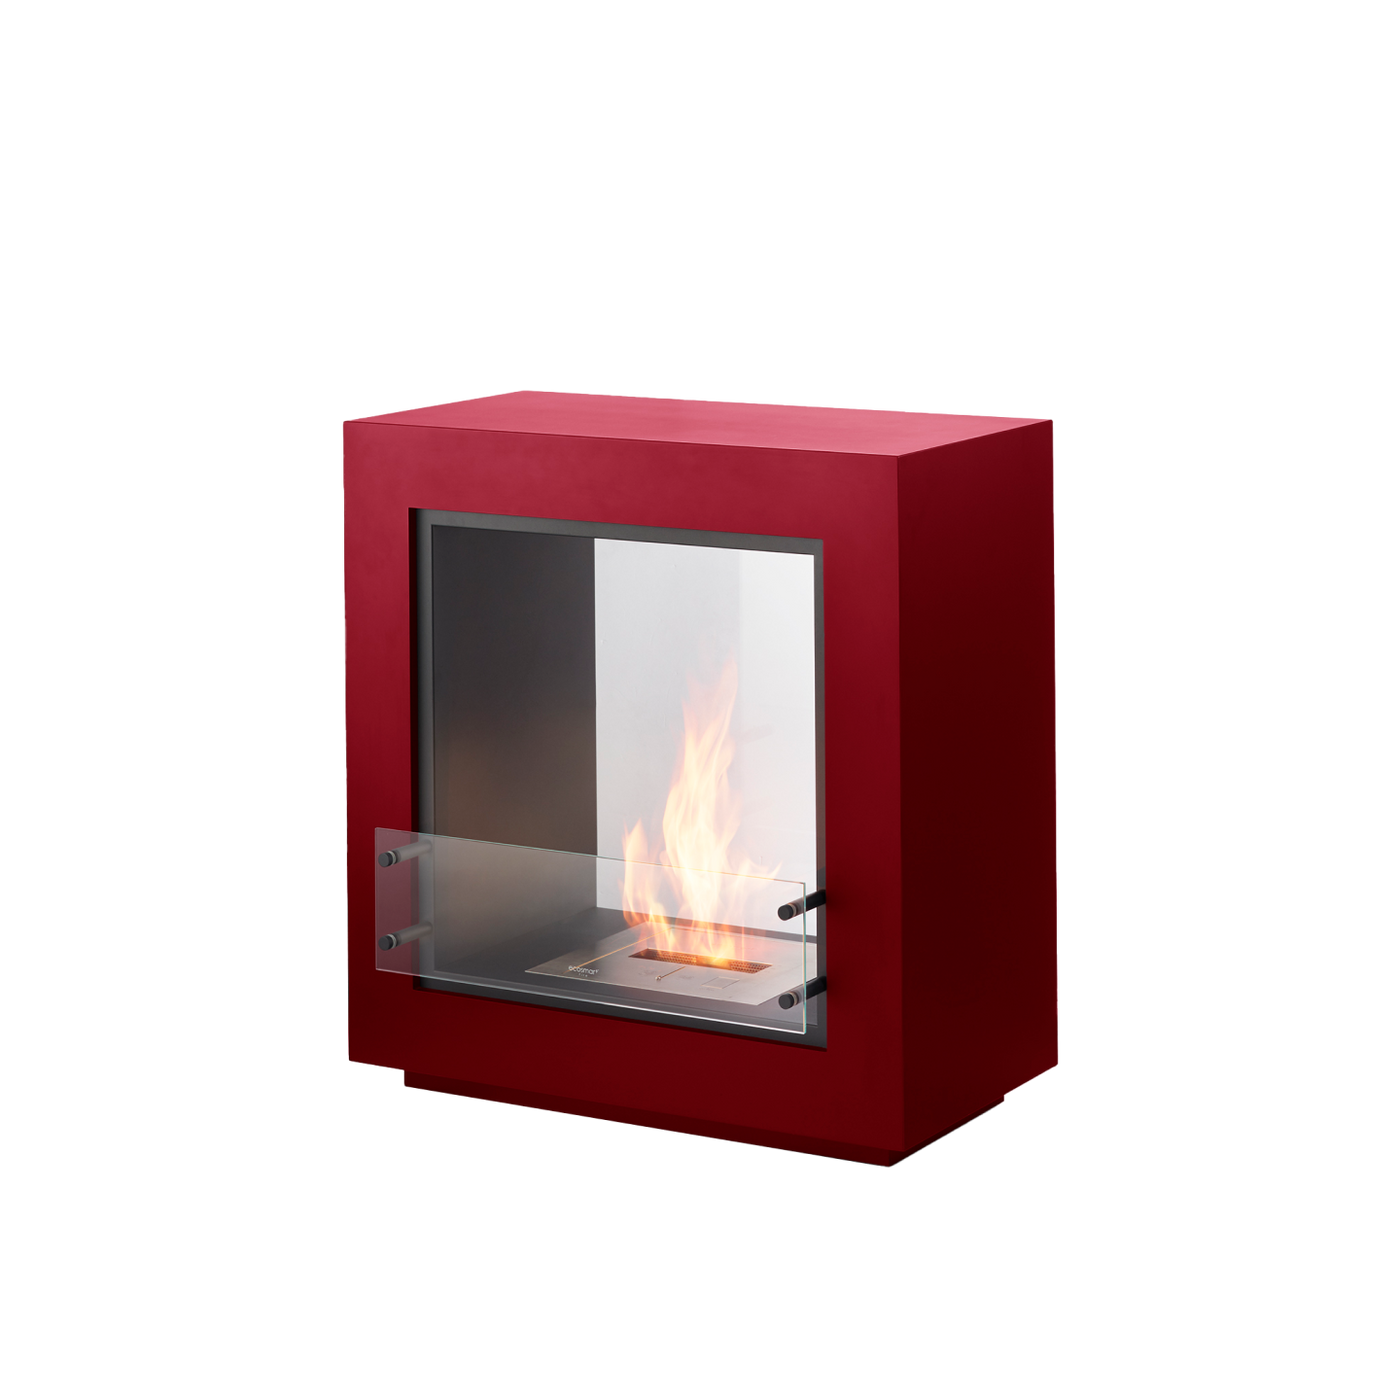 エタノール 暖炉 Nu-Flame 自立式フロア暖炉 フィアマ Fiamme 暖房 NF